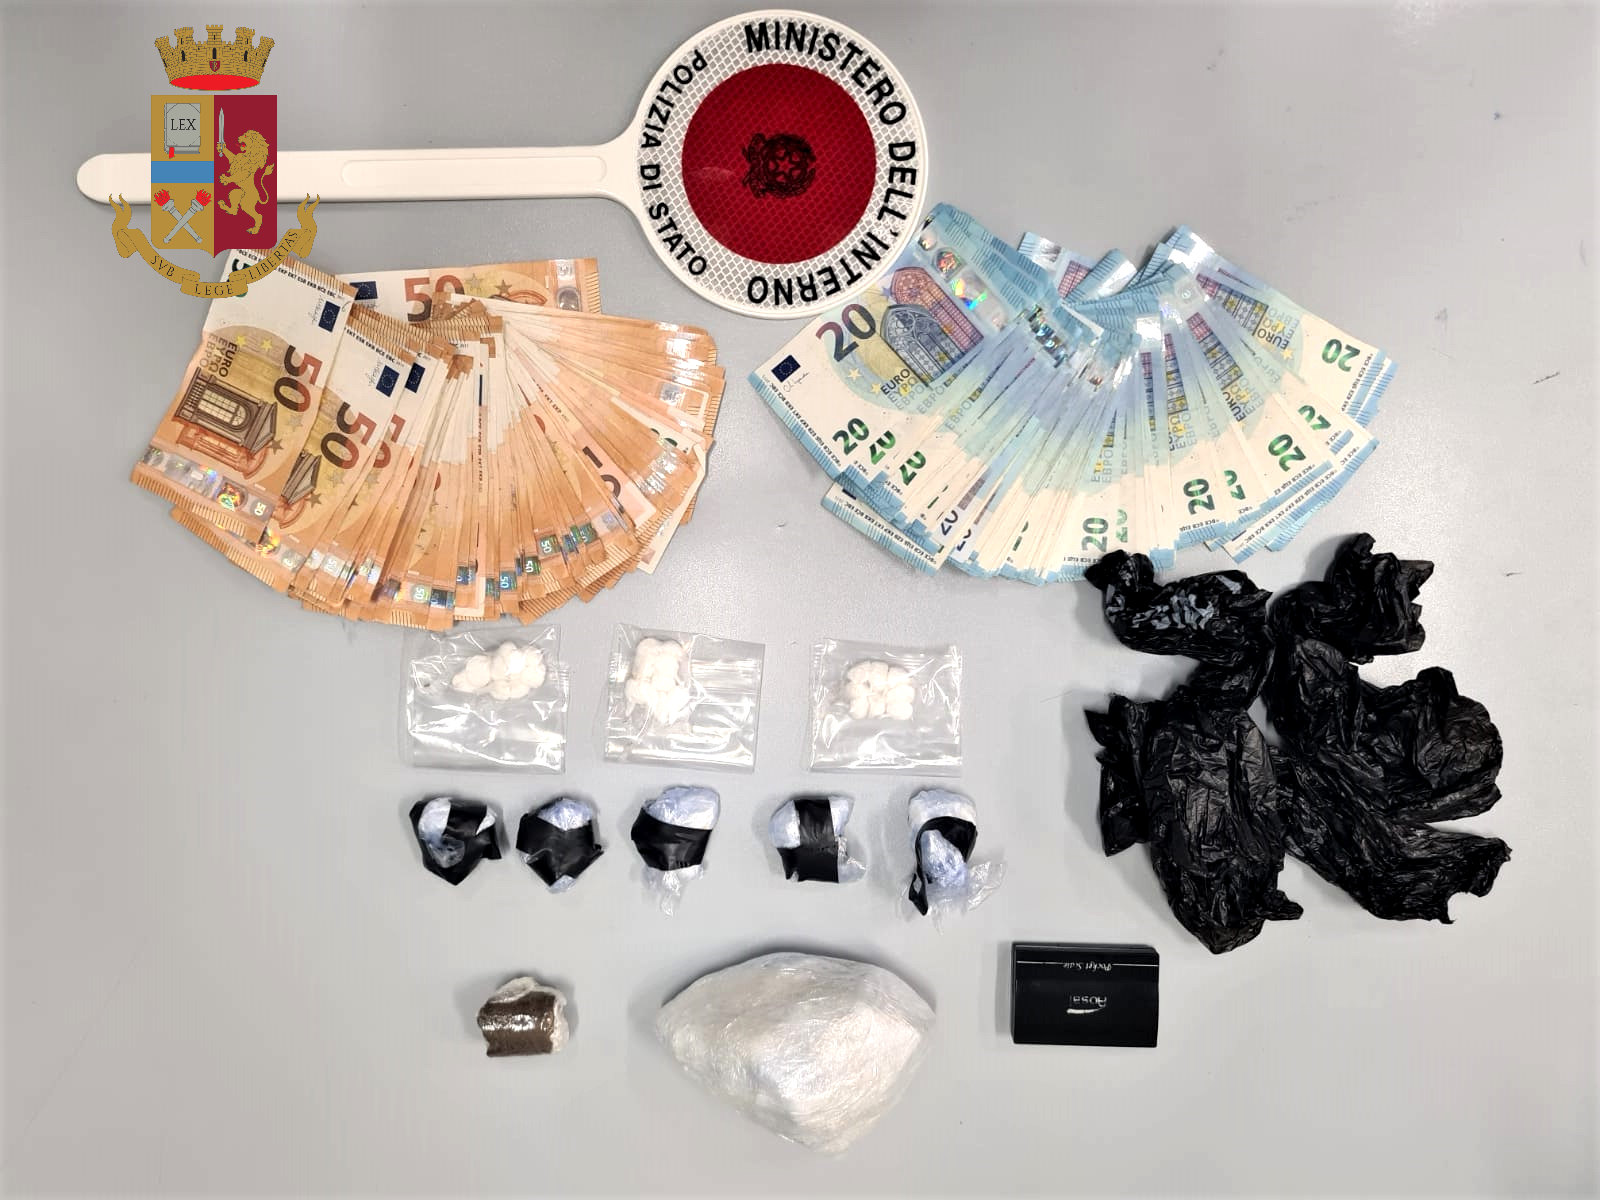 Arresto Nuflex 24 maggio 2022. Droga ed euro sequestrati dalla Polizia 20220524 foto Mobile droga